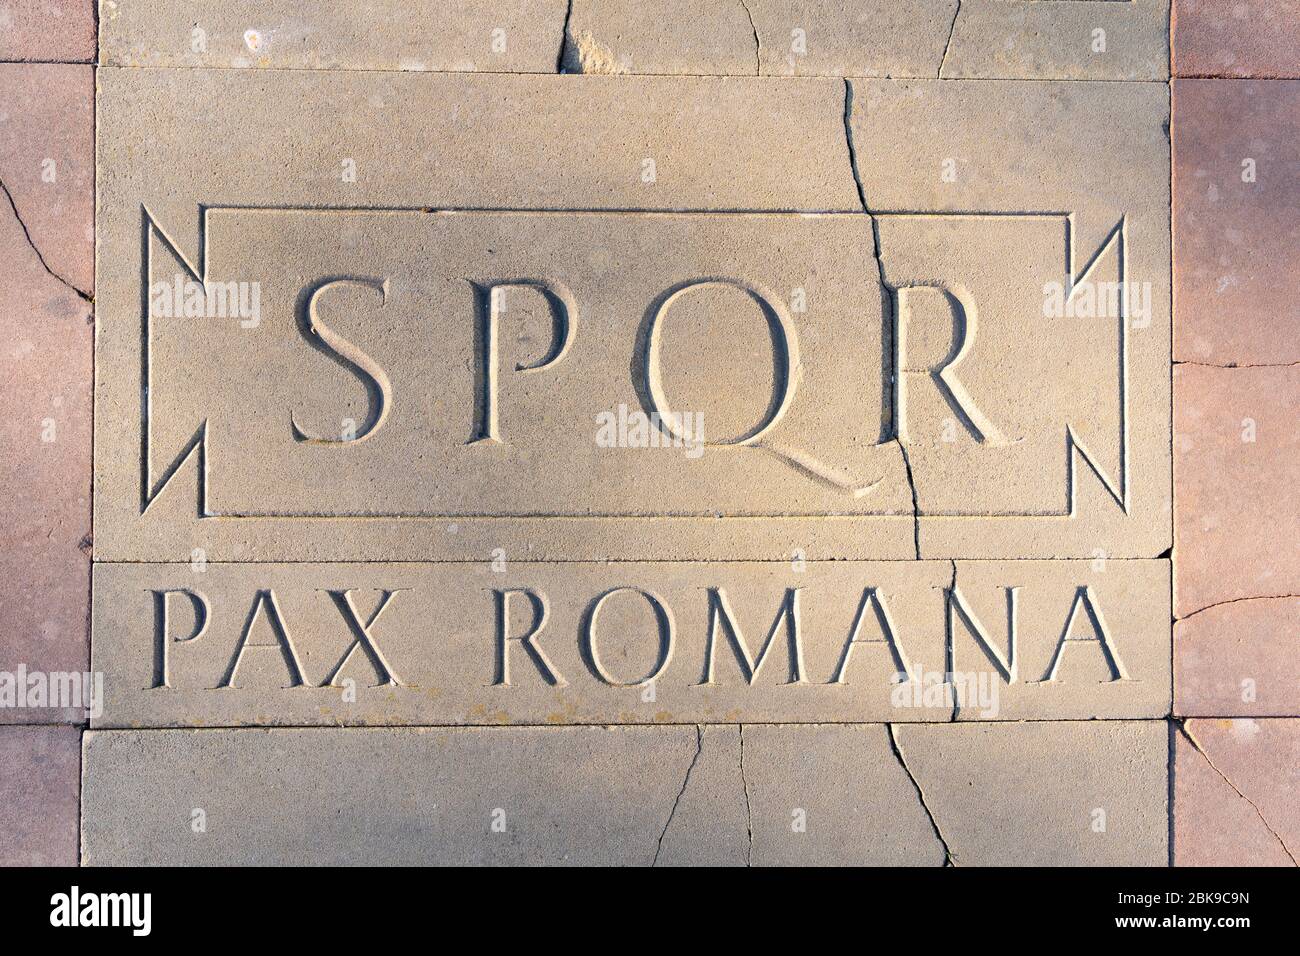 Eine geschnitzte Platte aus Pflastersteinen, die Basingstokes Verbindungen und die Verbindung mit Europa darstellt. Hier ist SPQR Pax Romana in Latein graviert. GROSSBRITANNIEN Stockfoto